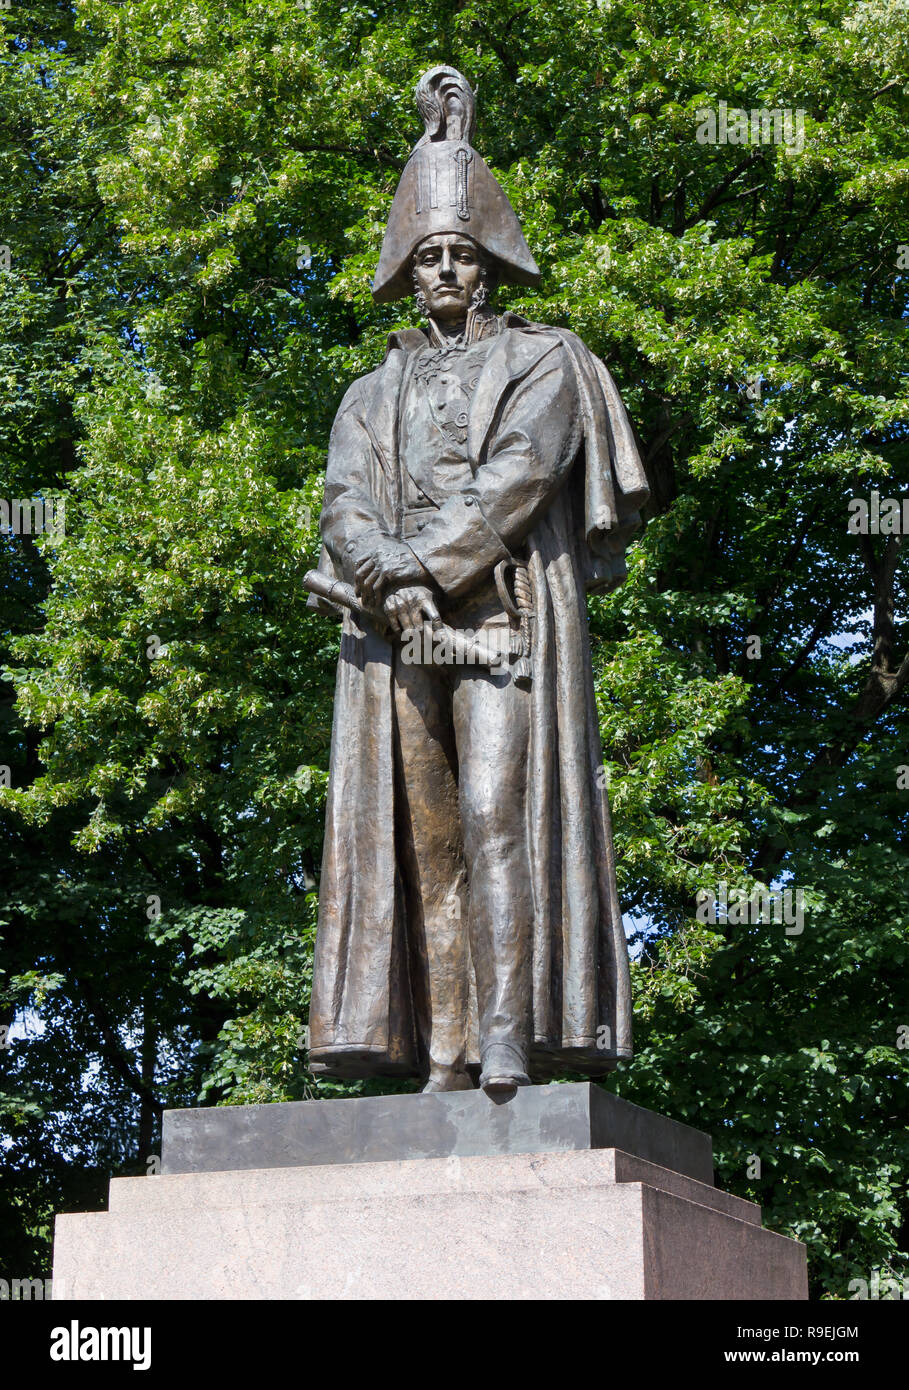 RIGA, Lettland - 17. Juli 2013: Bronzestatue von Barclay de Tolly, Feldmarschall der Russischen Armee und Krieg Minister während der 1812 Russische Kampagne Stockfoto